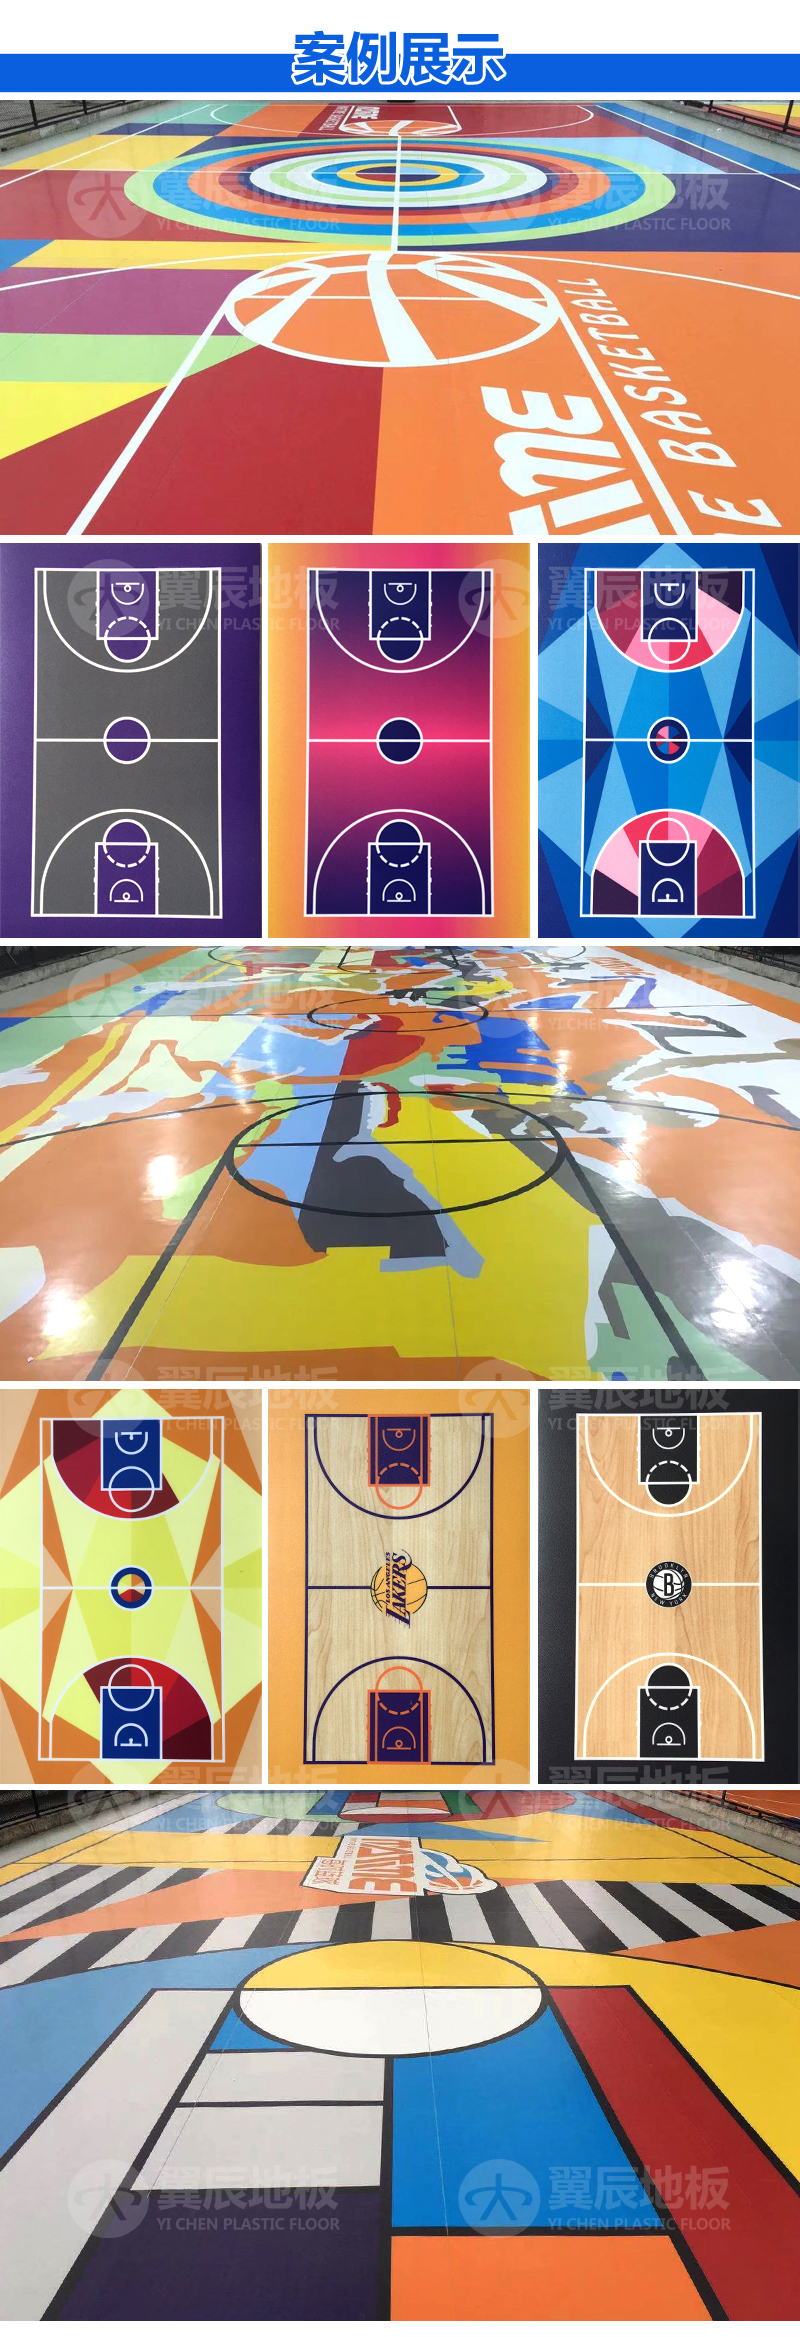 籃球場打印定制地板案例